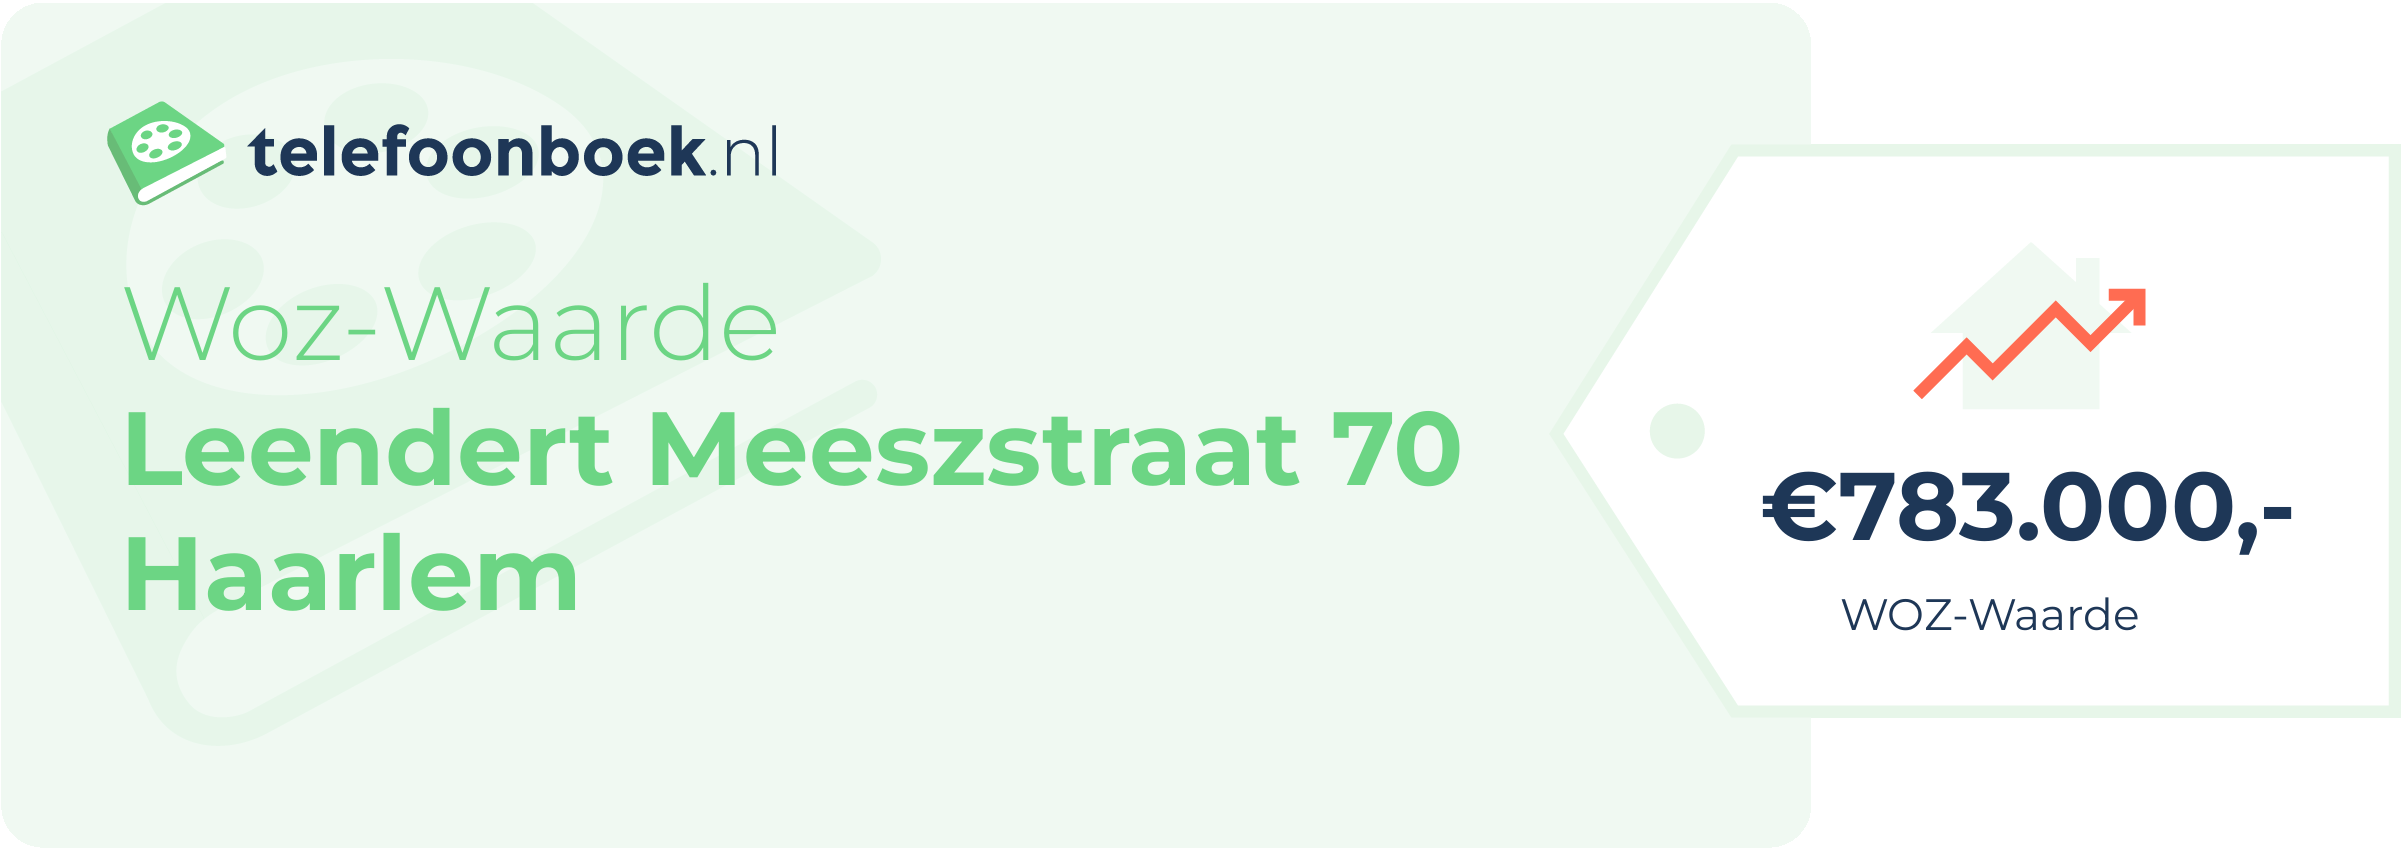 WOZ-waarde Leendert Meeszstraat 70 Haarlem